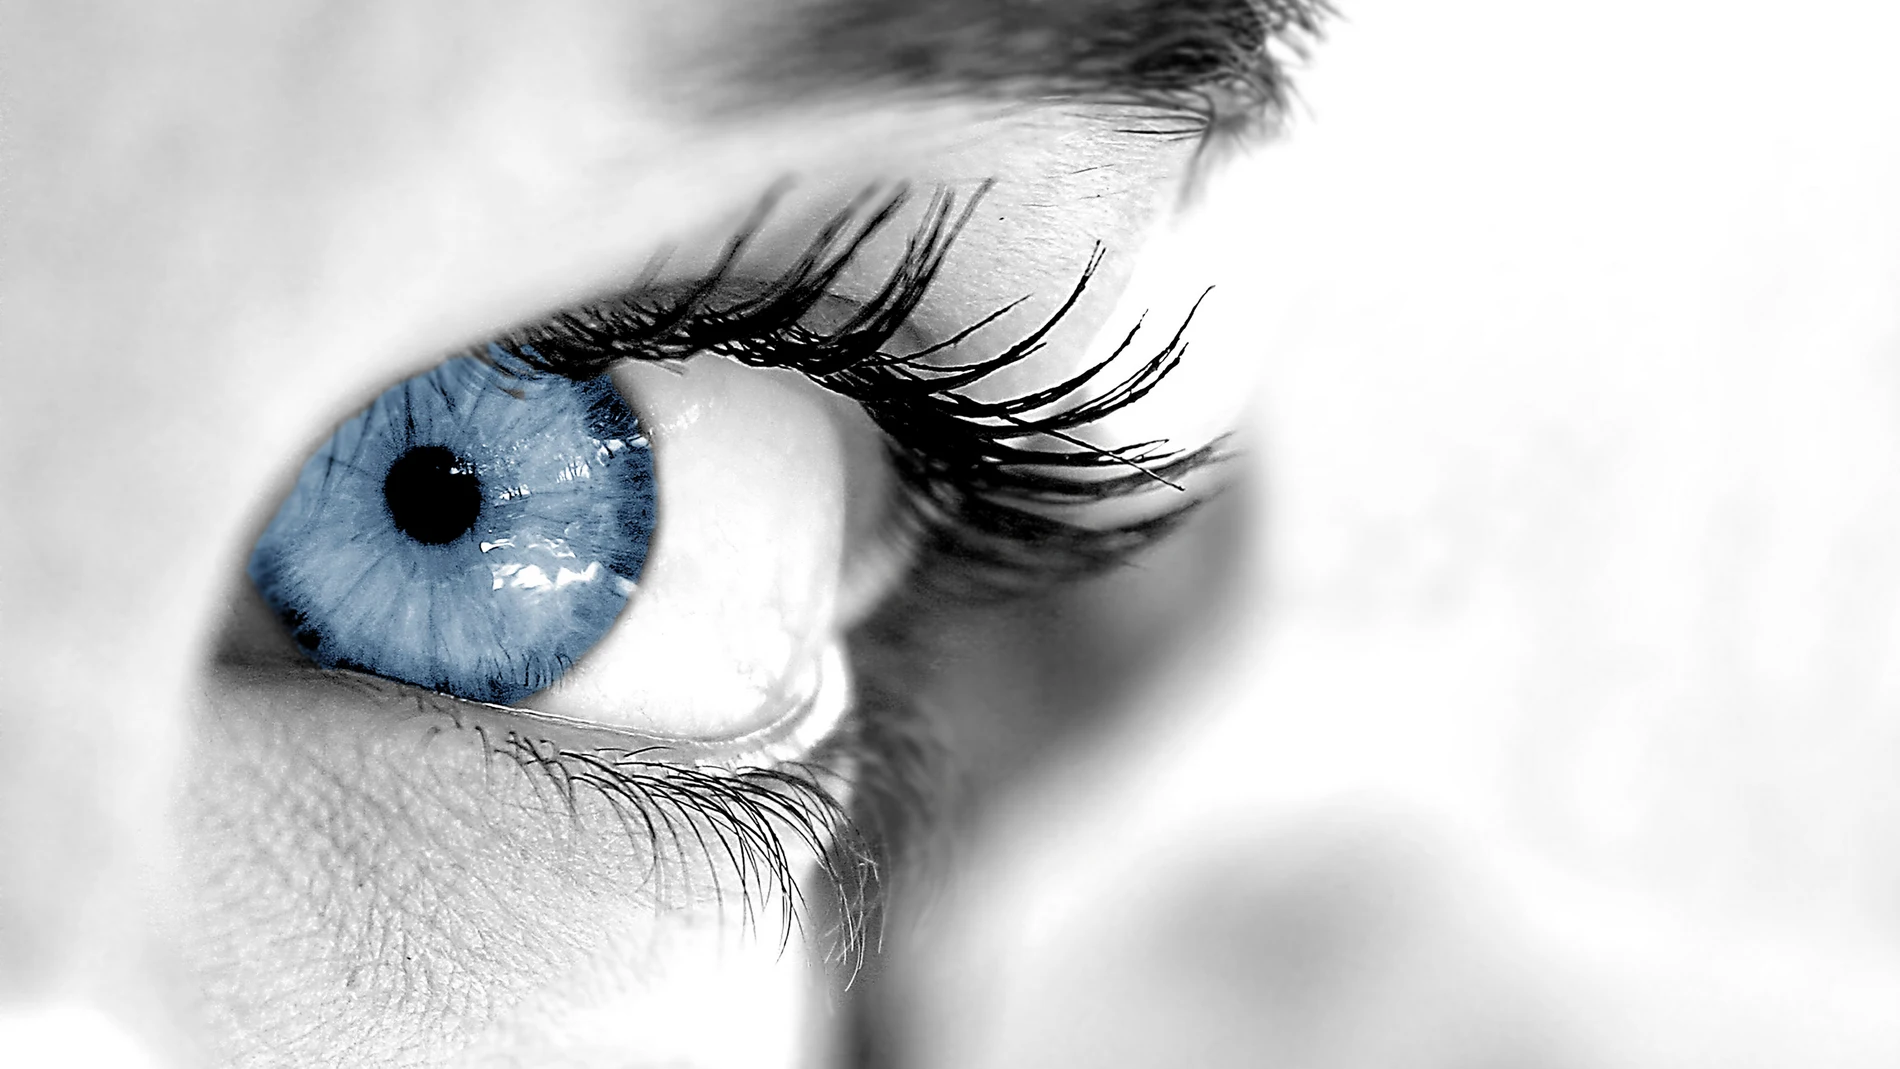  La Sociedad Española de Oftalmología advierte sobre los riesgos que la intervención para cambiar el color de ojos puede suponer para la visión